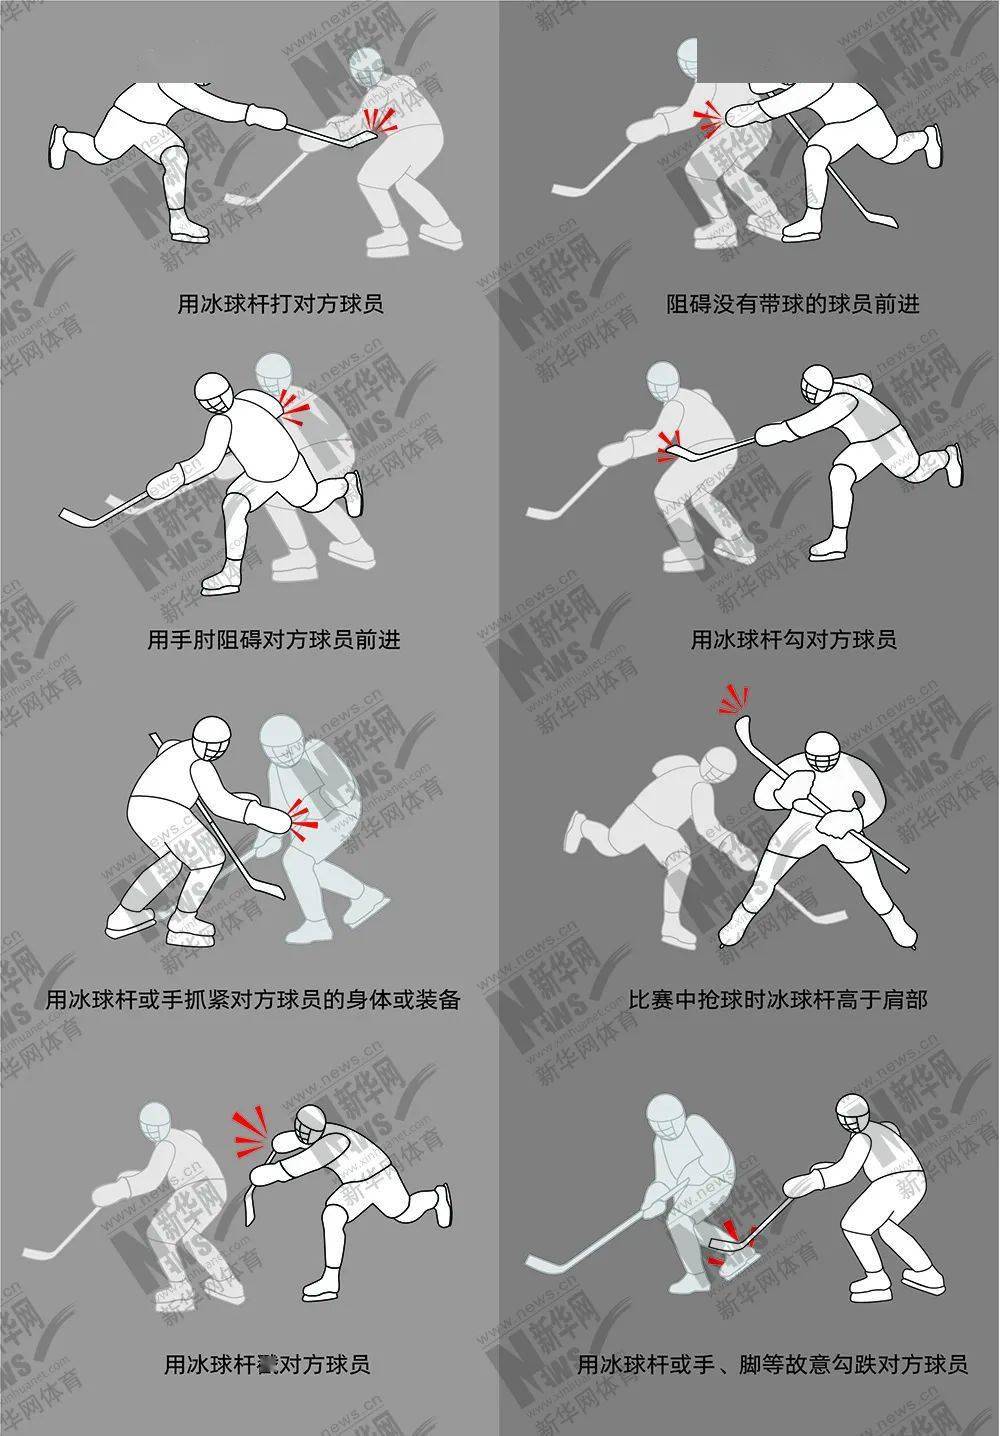 冰球打架规则图片